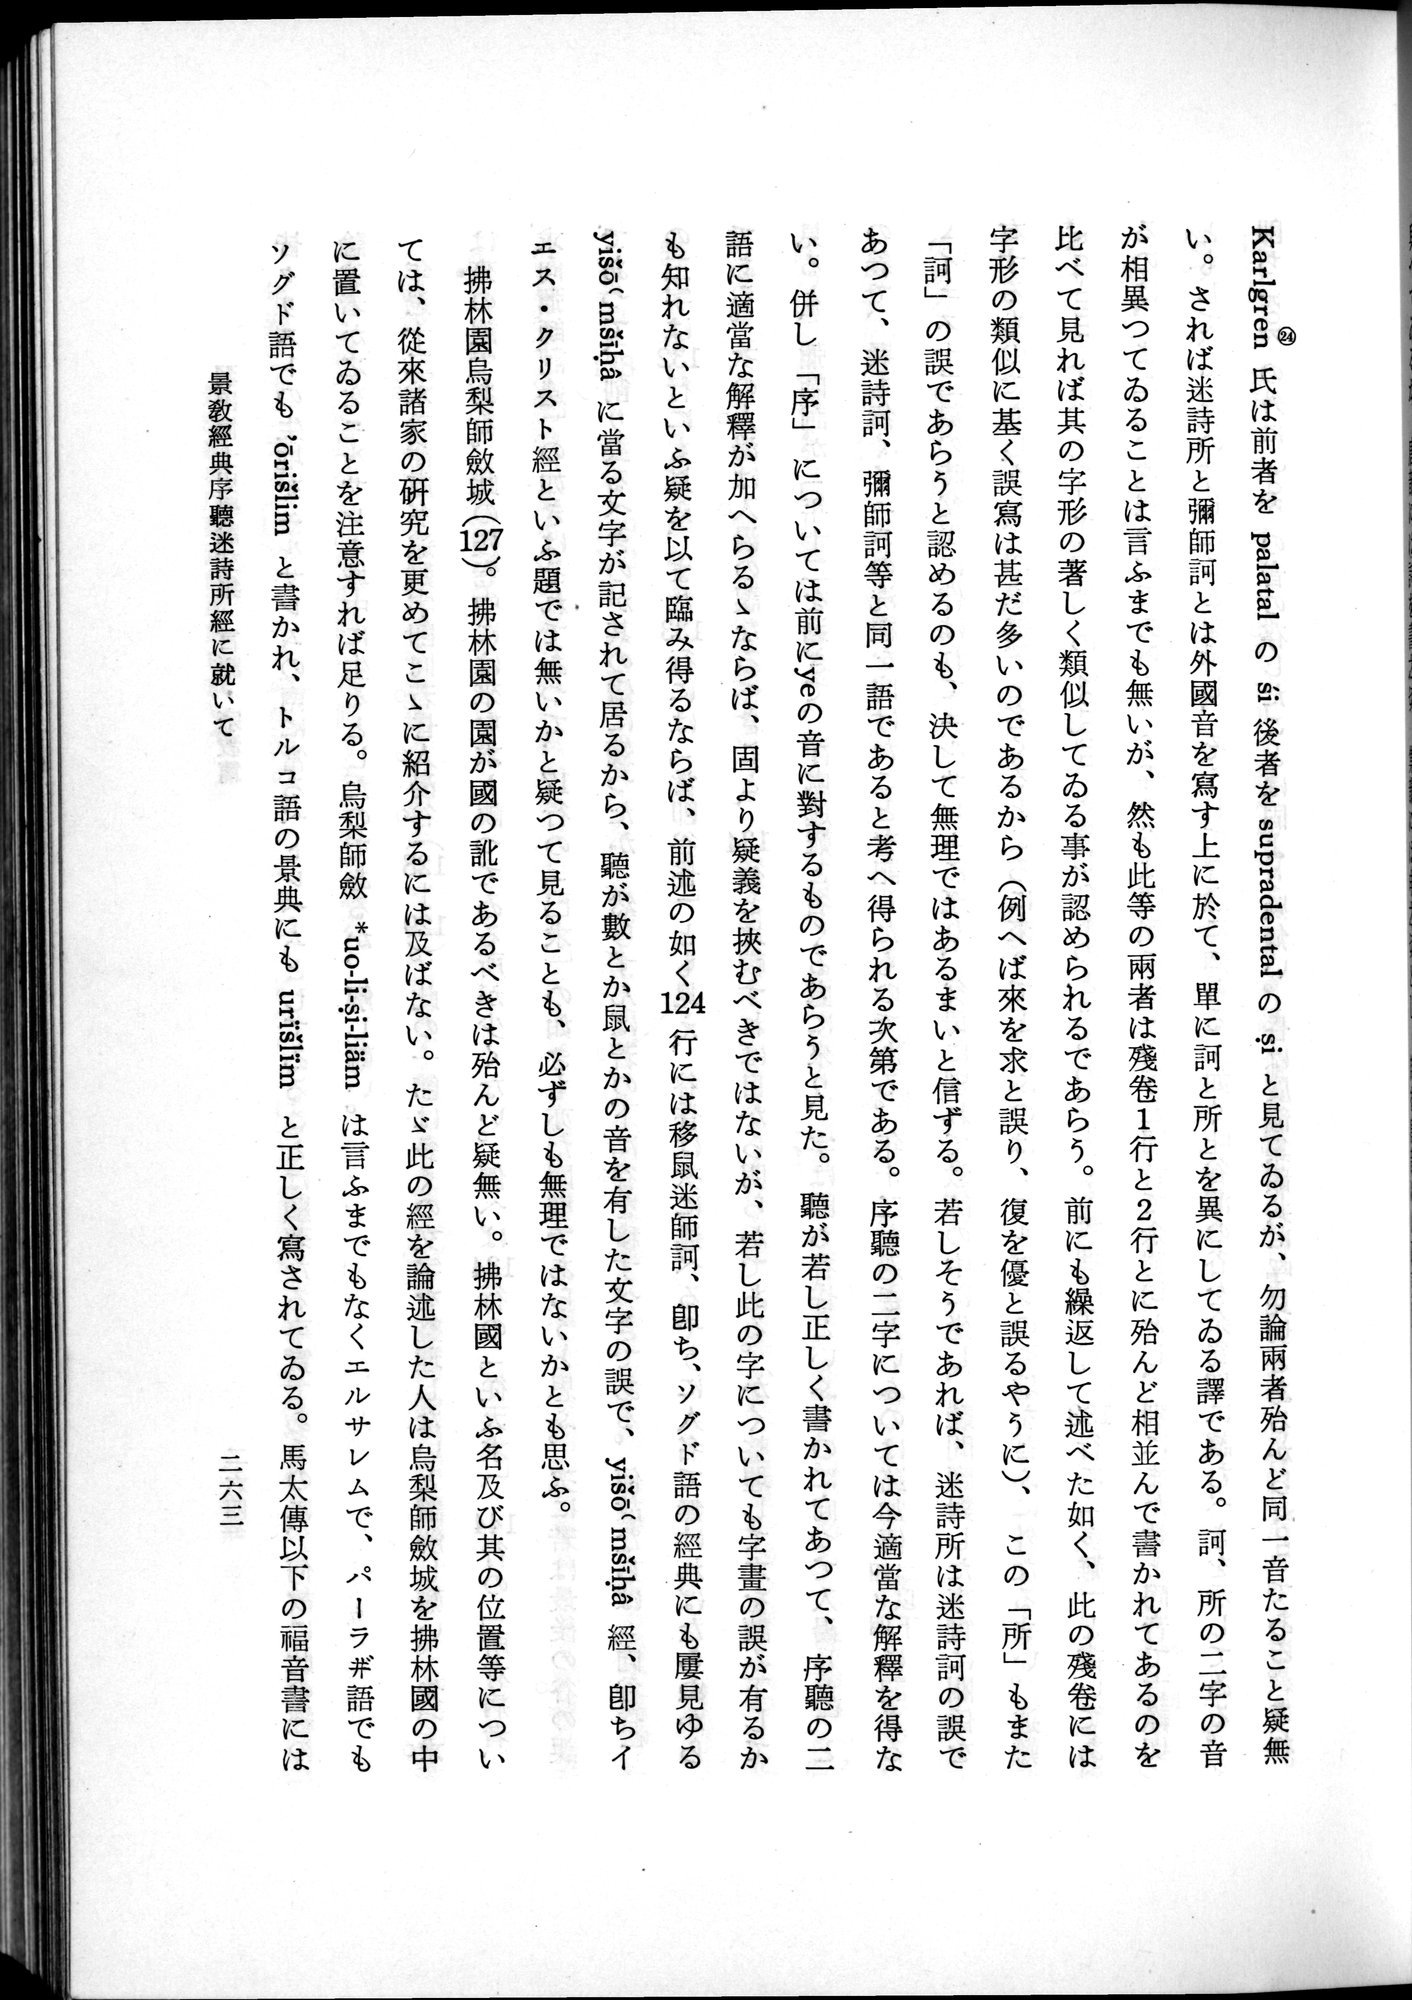 羽田博士史学論文集 : vol.2 / Page 325 (Grayscale High Resolution Image)